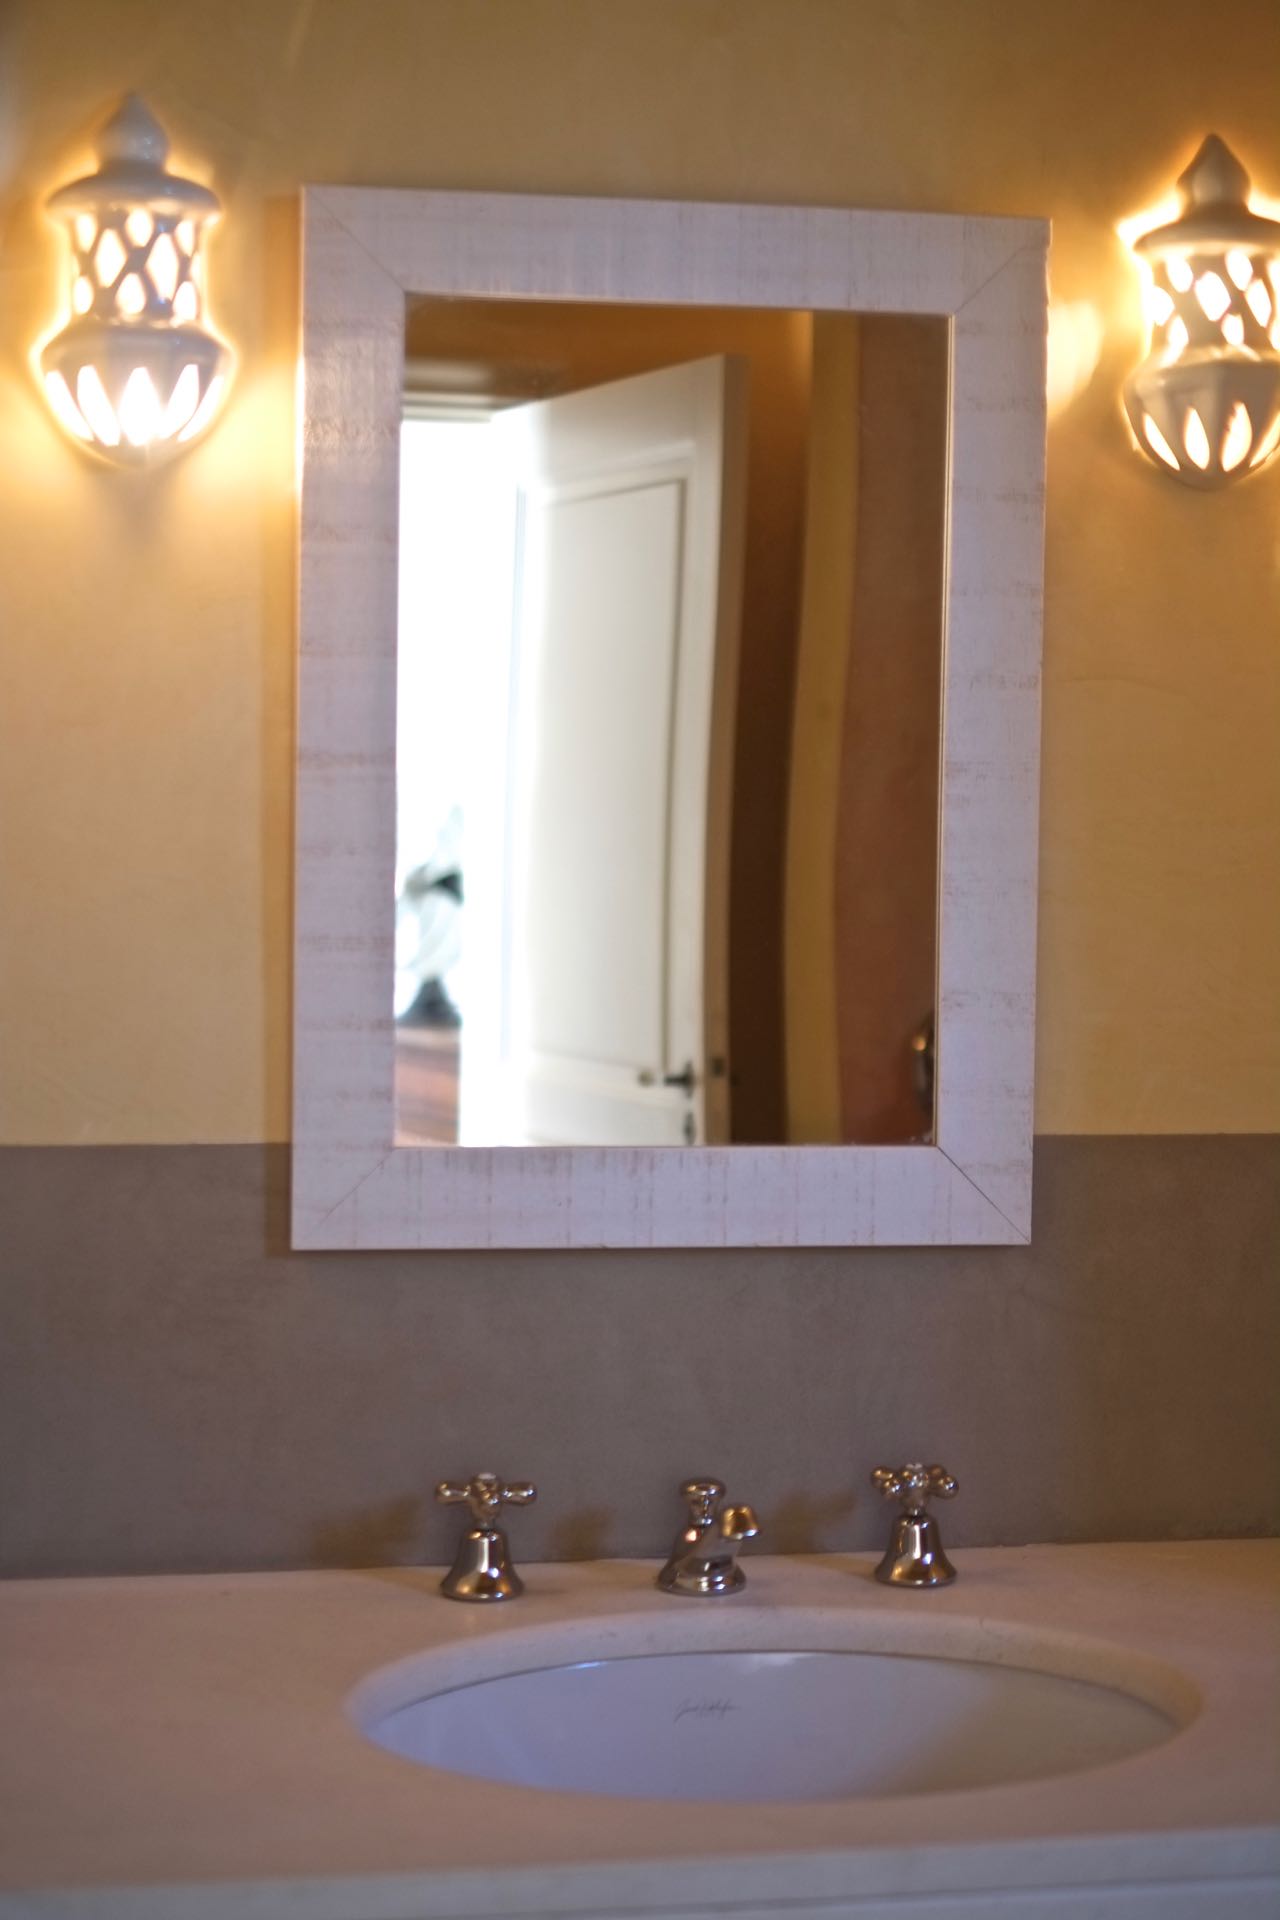 La suite Mourvedre - the en-suite shower room